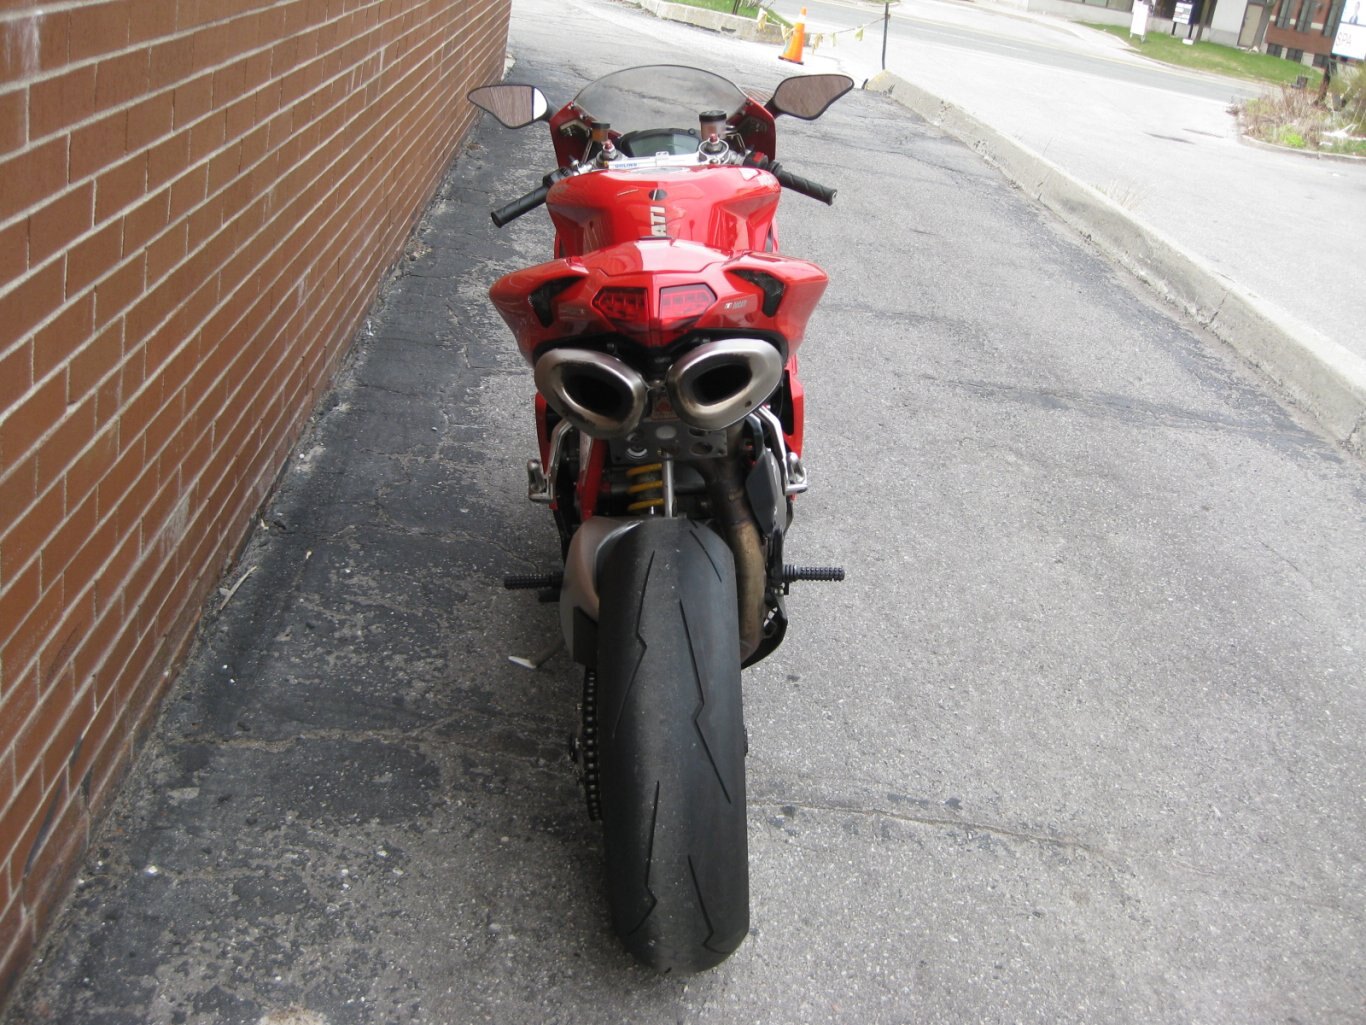 2010 Ducati 848